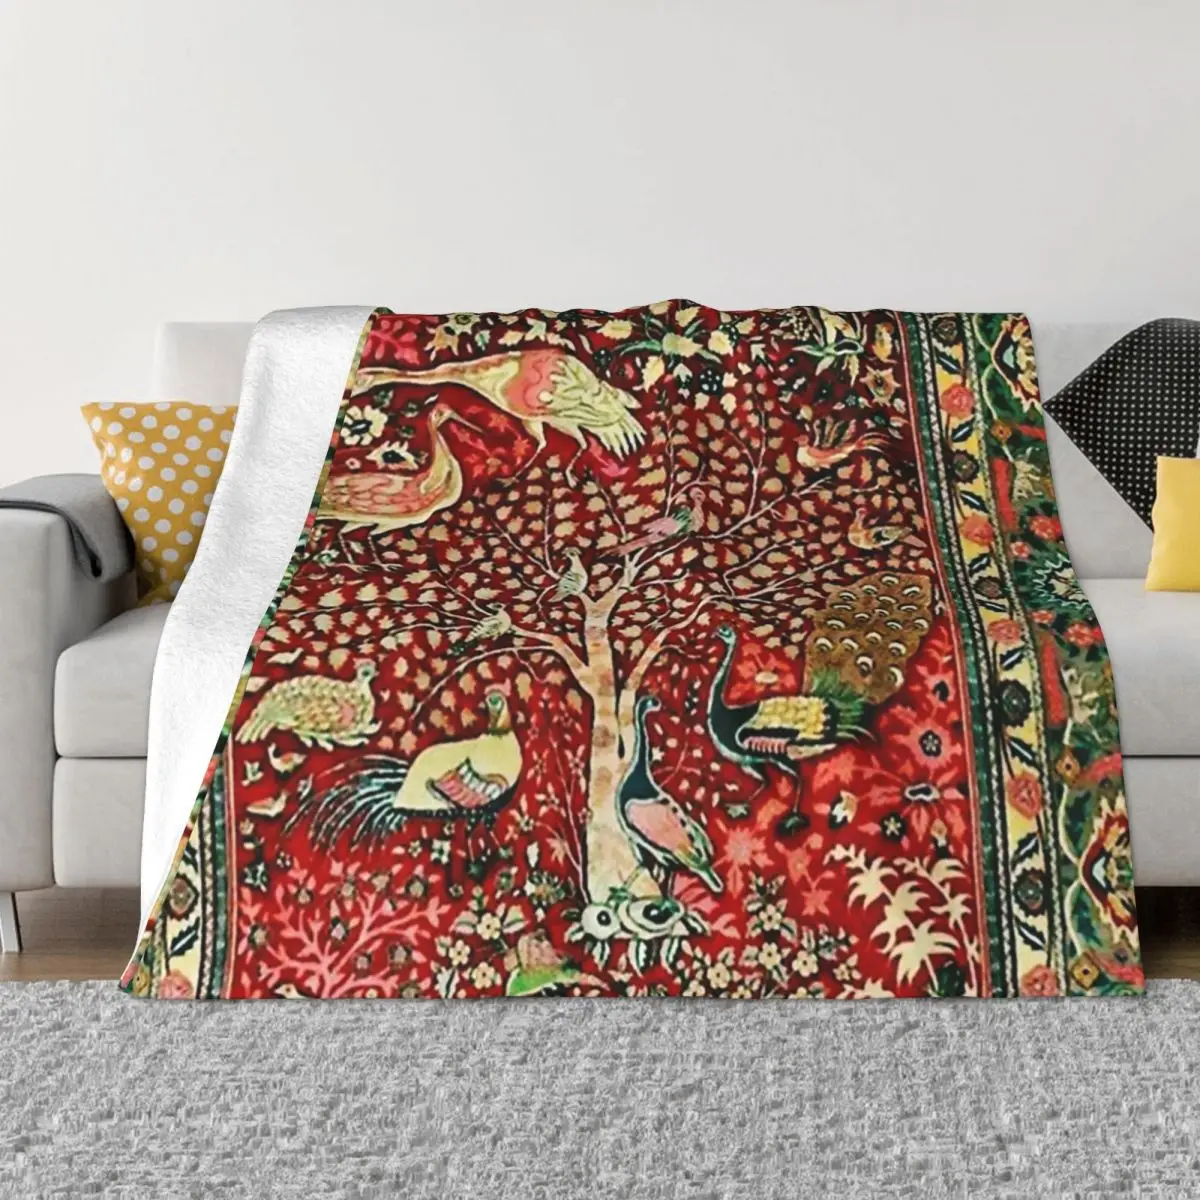 

Античный персидский ковер, птичье дерево, цветы, Фланелевое Флисовое одеяло, пушистое одеяло, домашнее покрывало для дивана, спальни, постел...